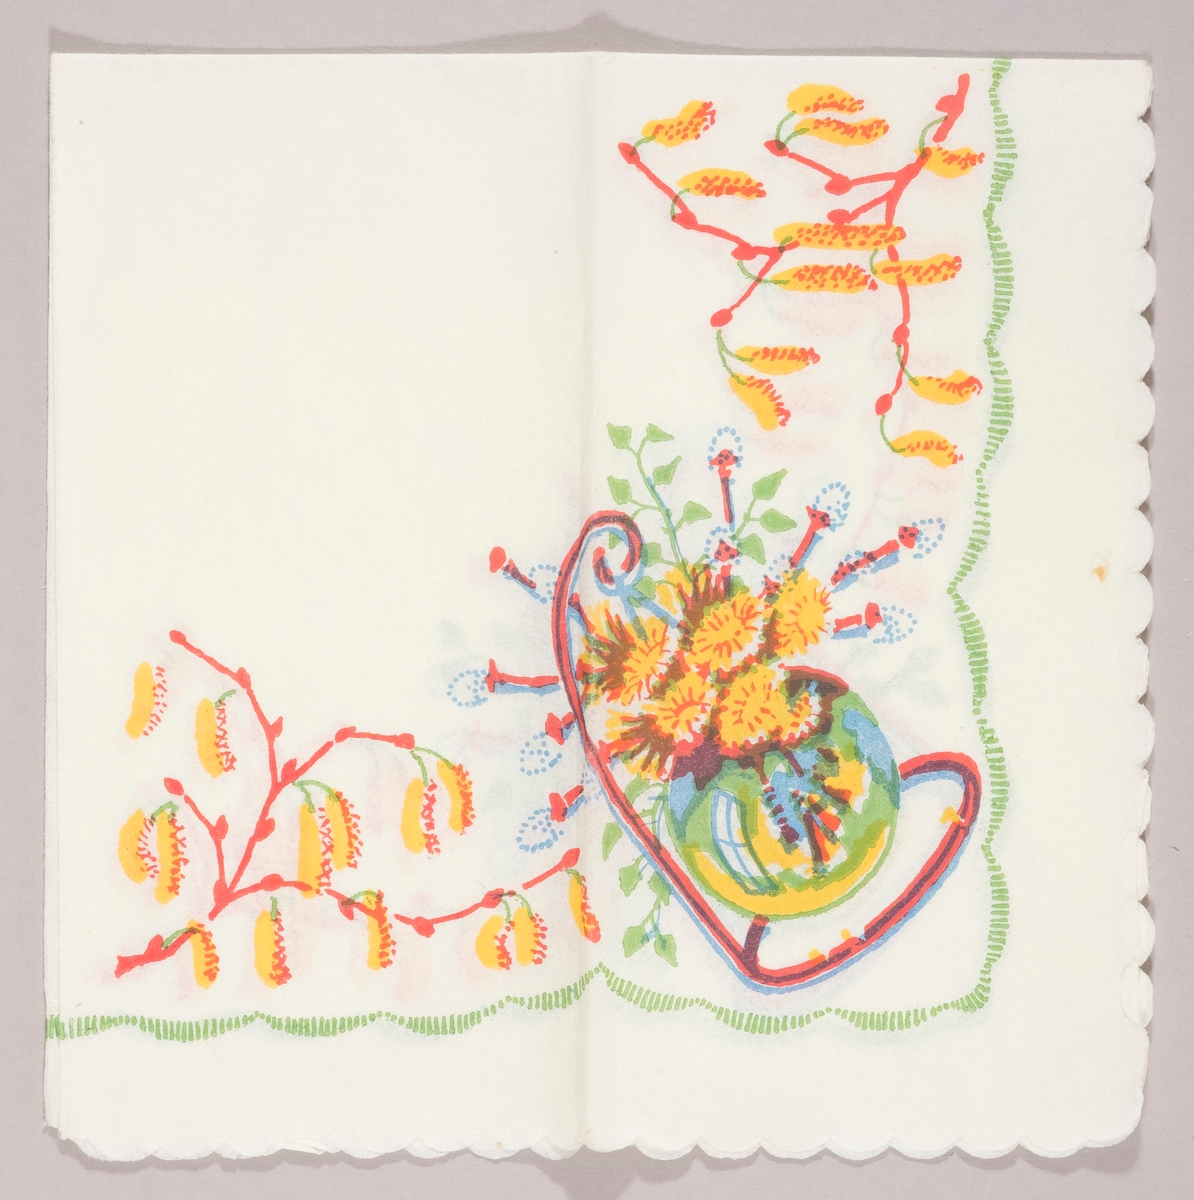 En bukett med gule blomster og grener med "gåsunger" i en vase som henger i et stativ. Grener med rakler. En bølget grønn kant.